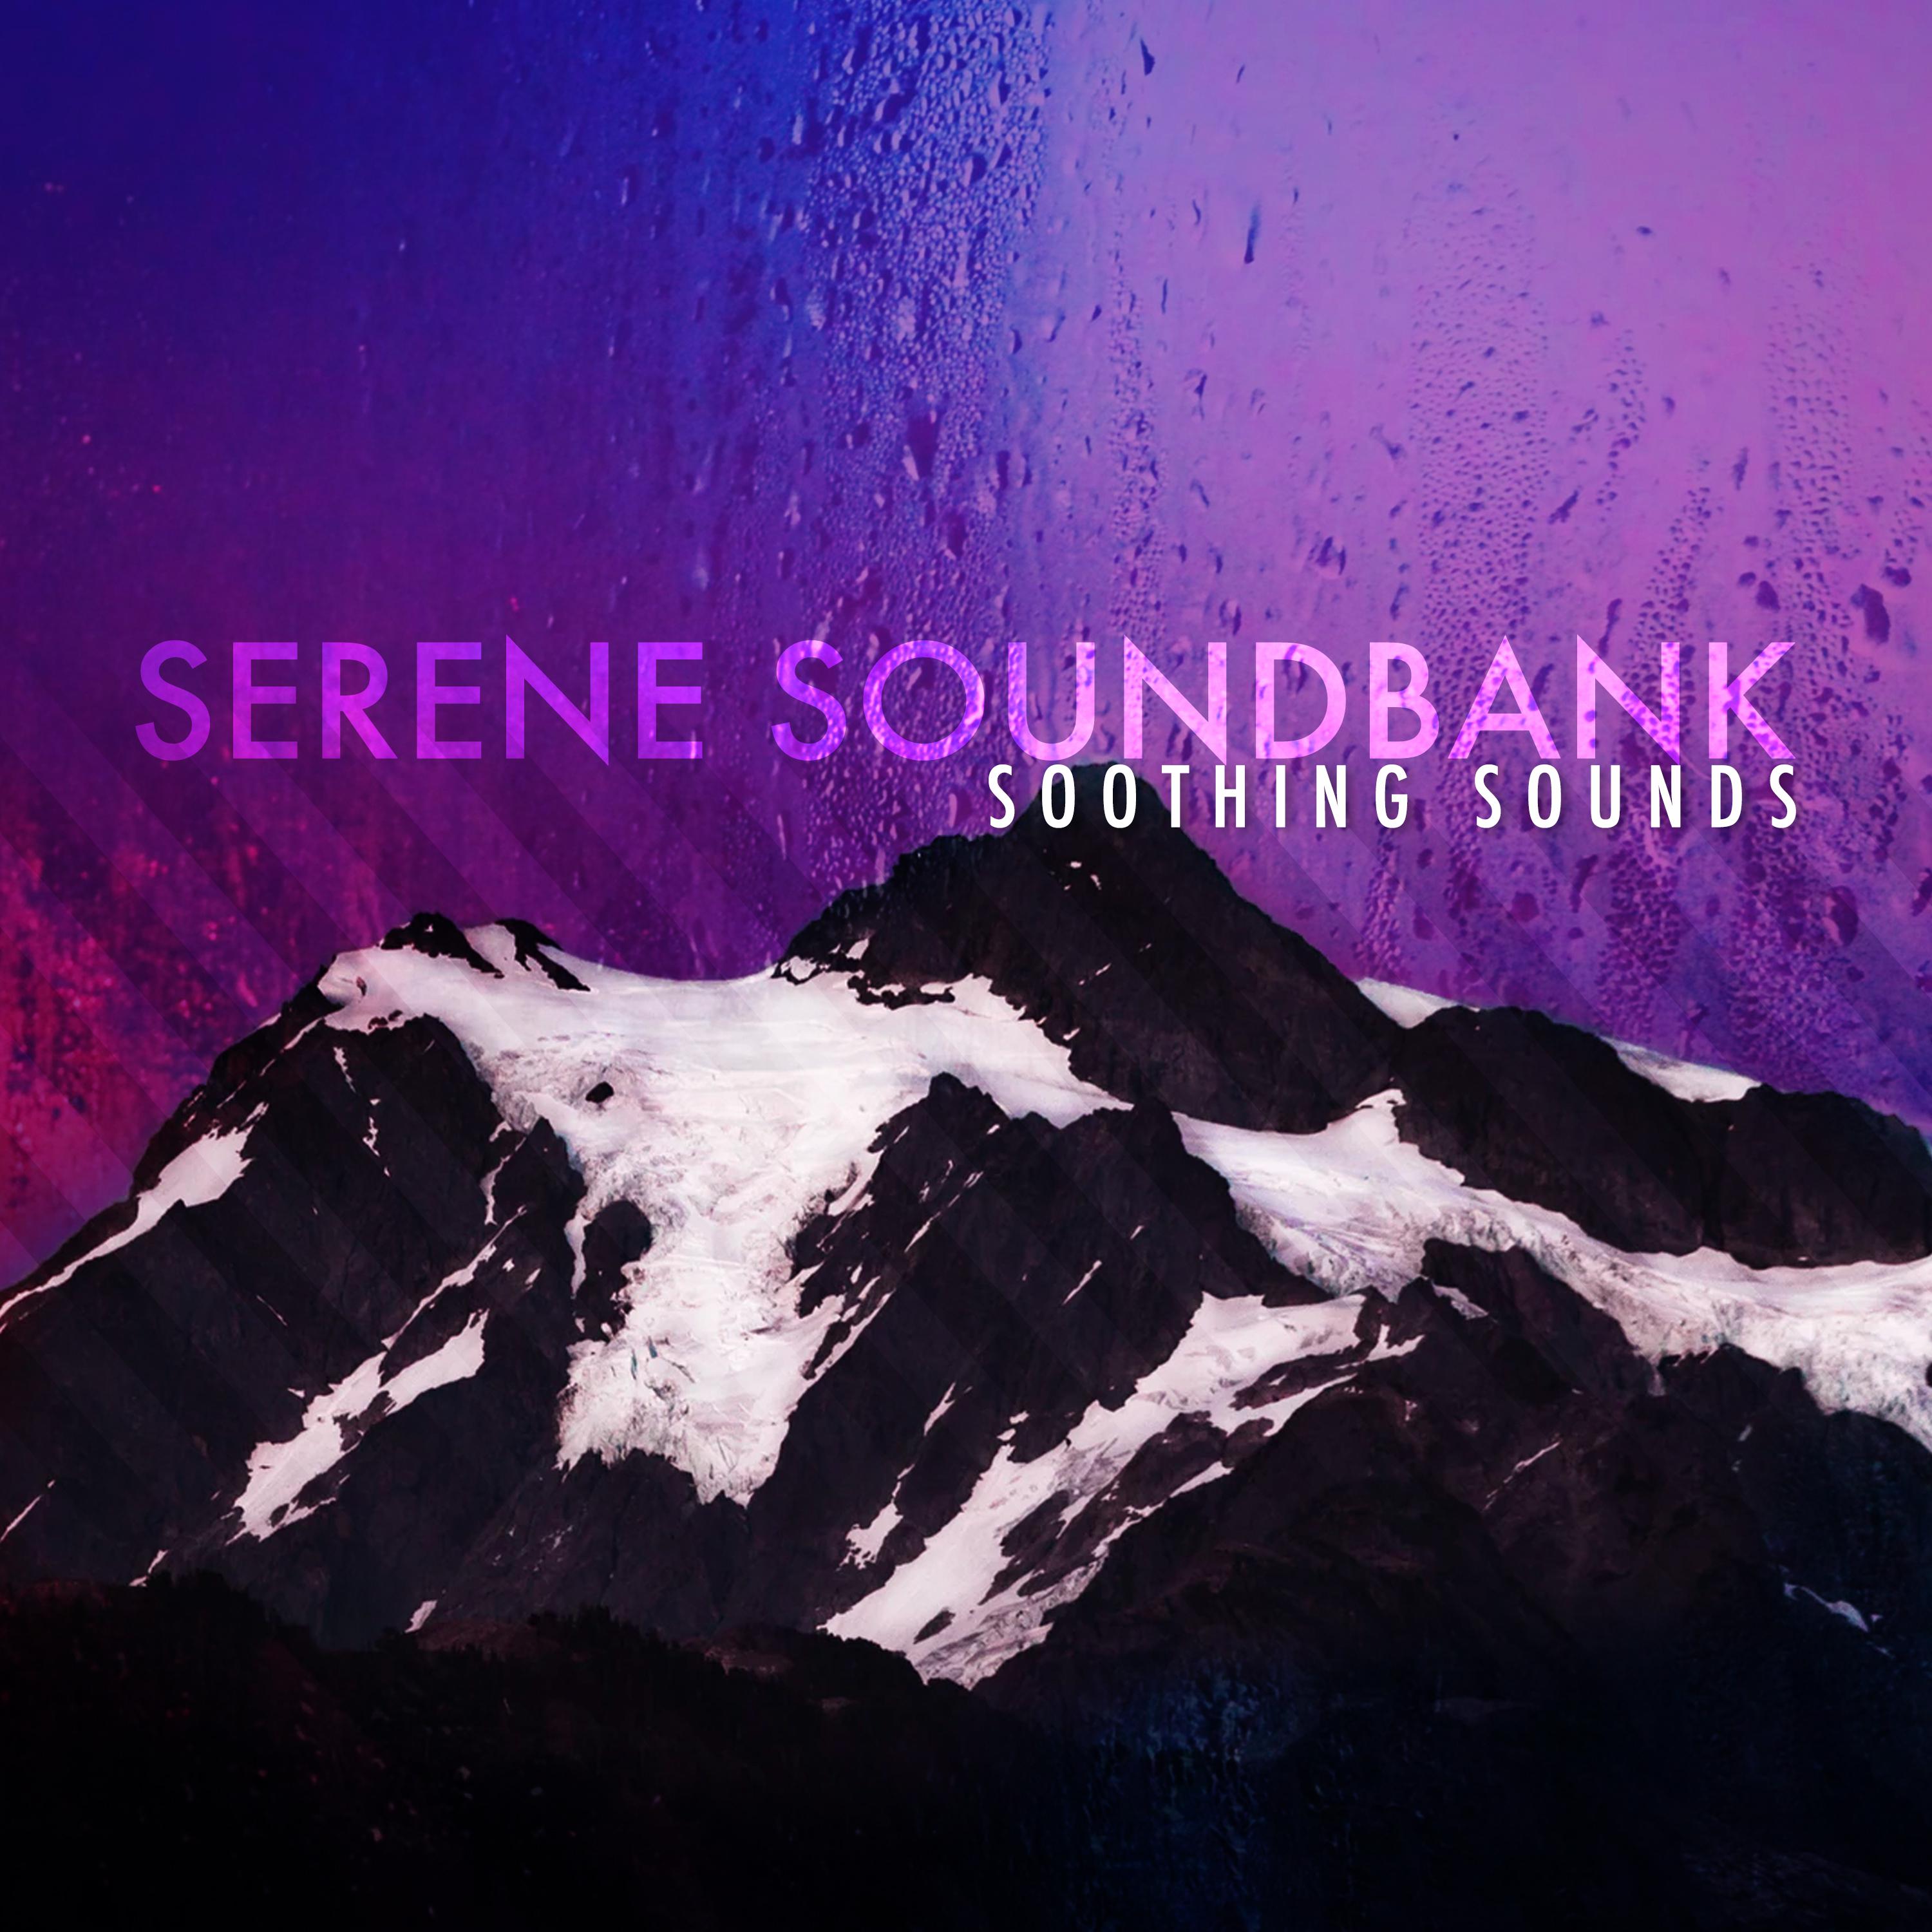 Serene Soundbank